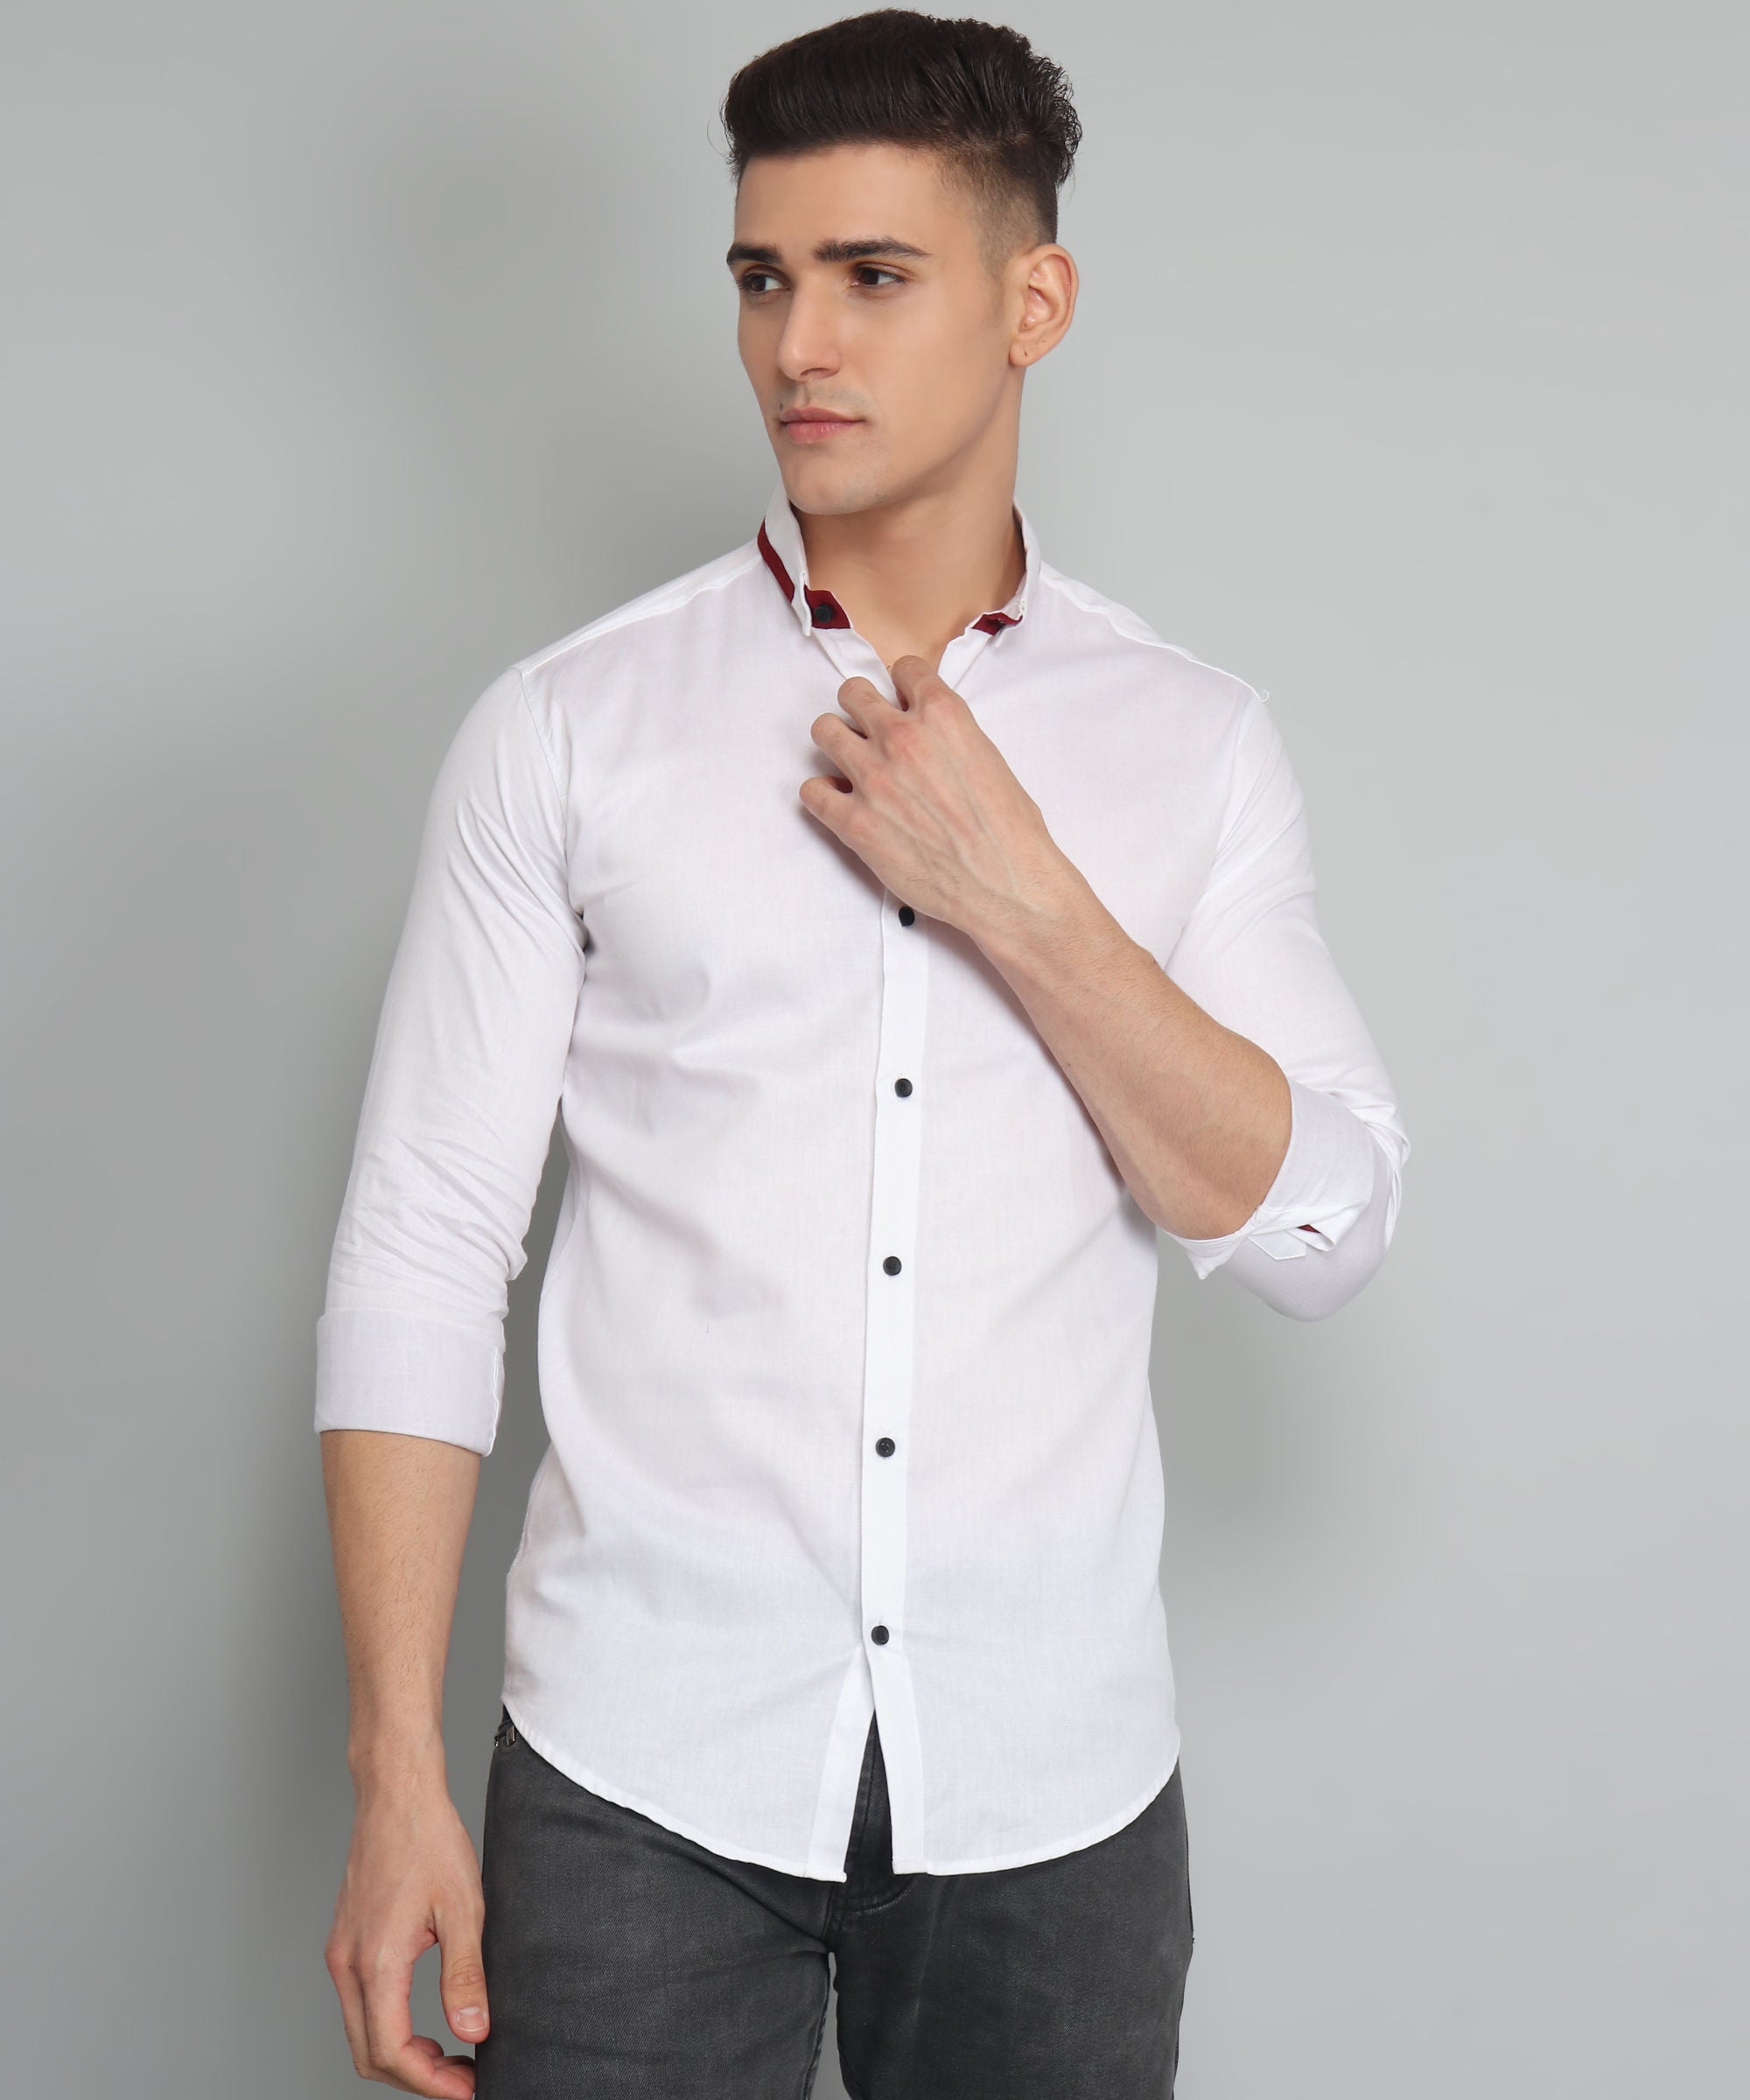 Rough Premium White Solid Men's Shirt